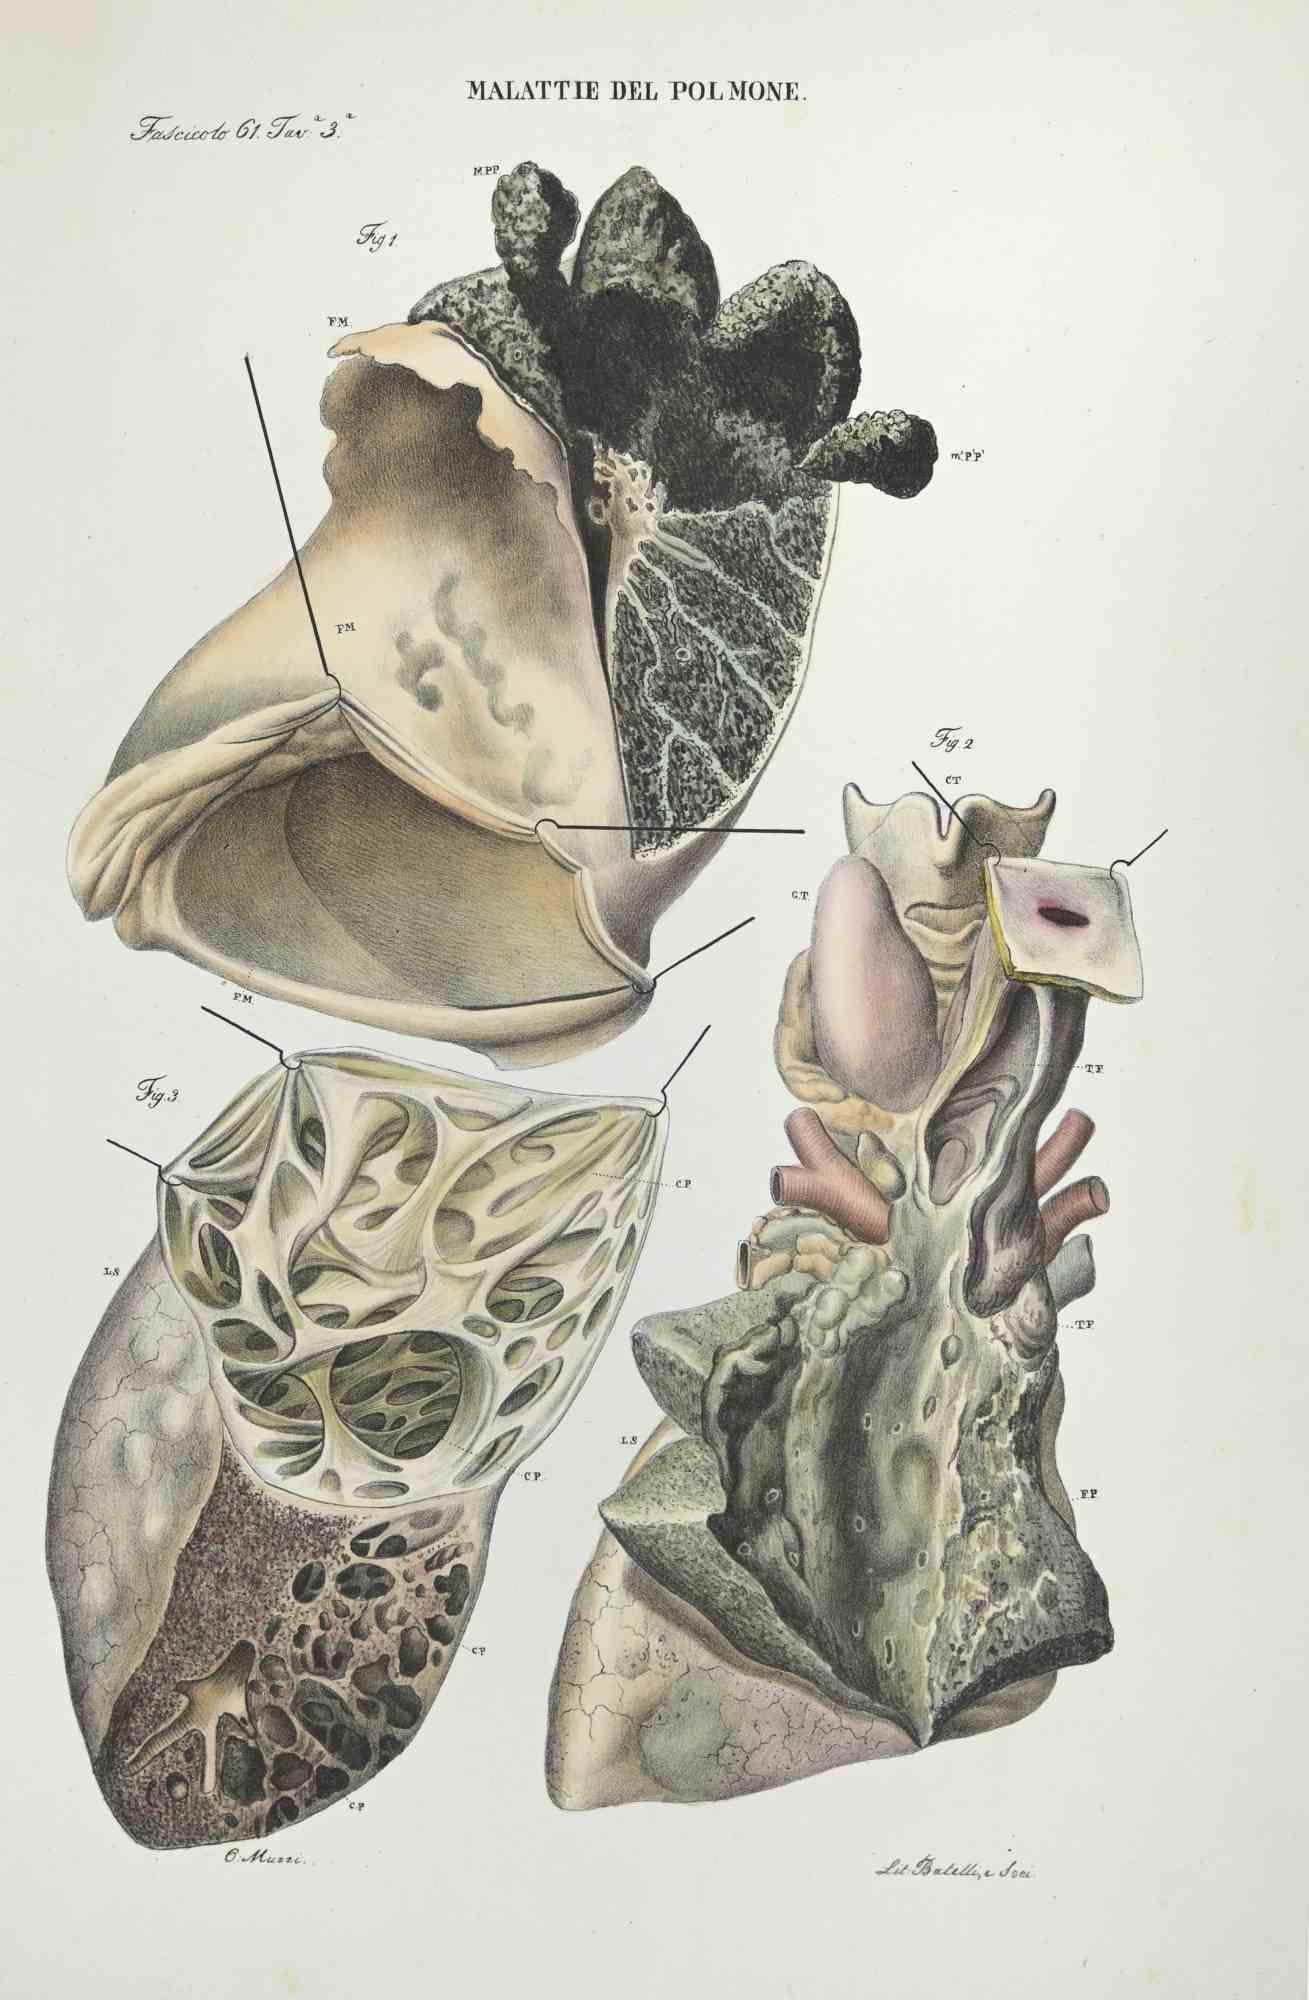 Malattie del cervello - Litografia di Ottavio Muzzi - 1843